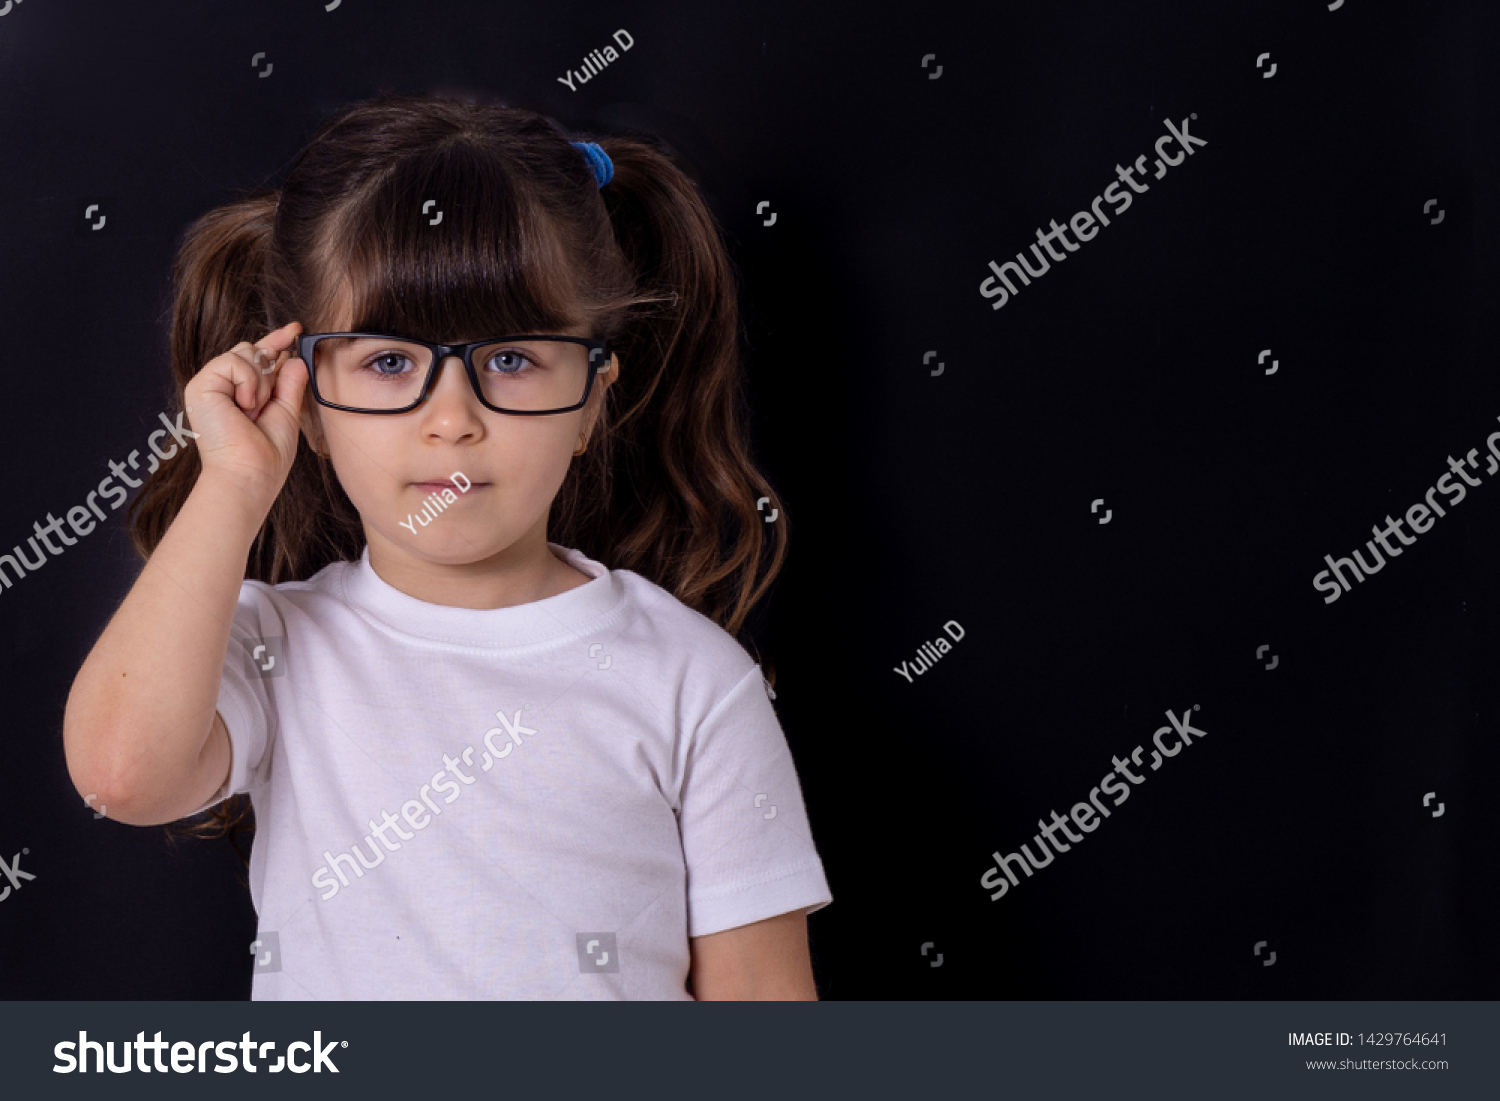 Cute nerd girl Images, Stock Photos & Vectors | Shutterstock